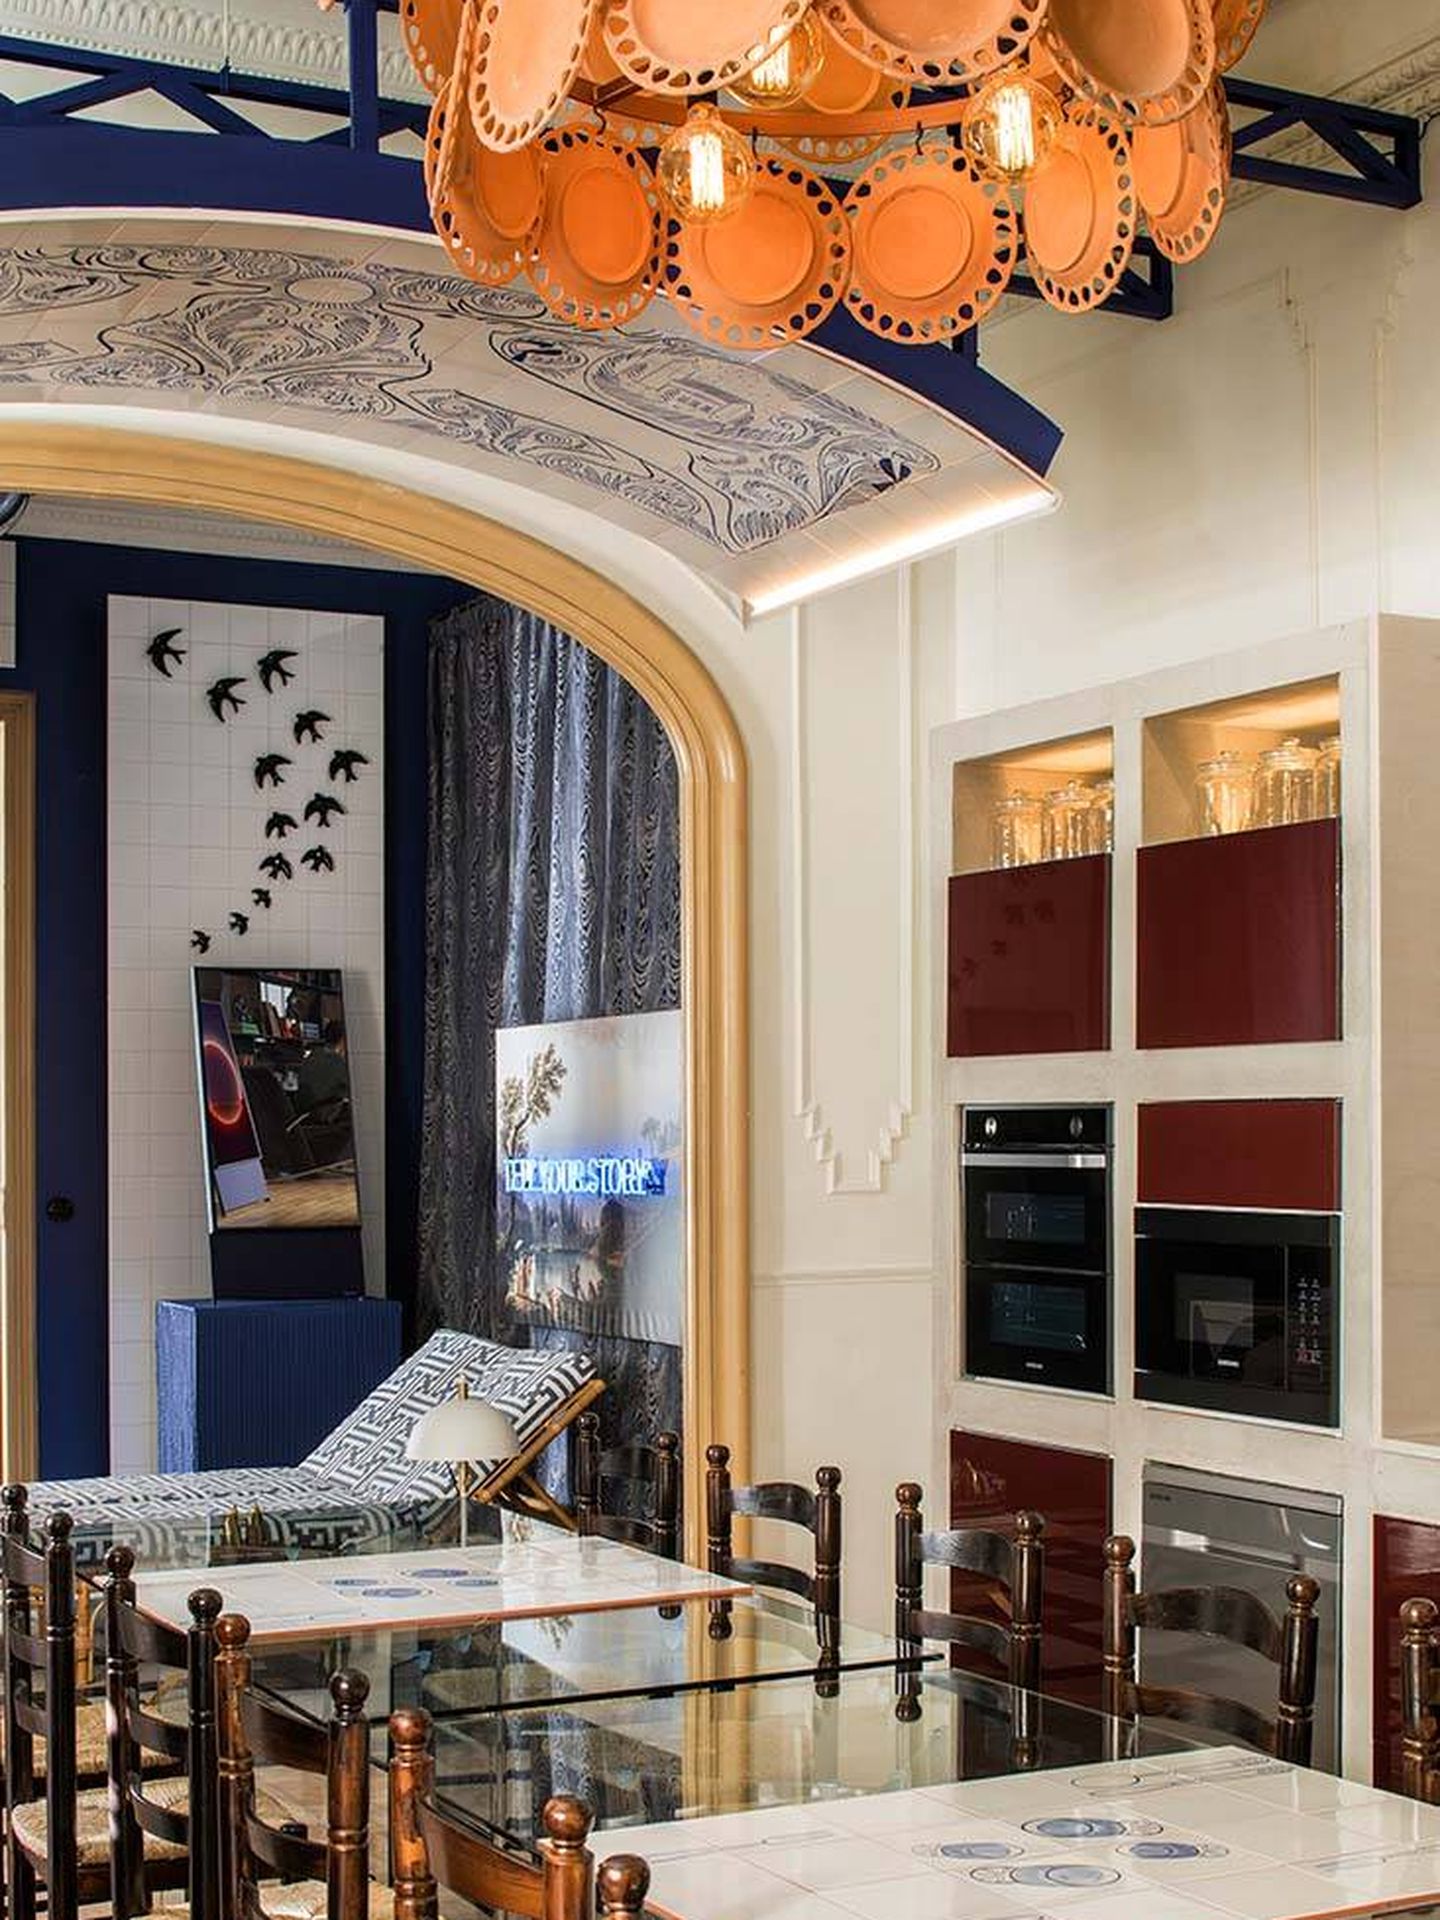 Espacio Samsung: 'Salón cocina', creado por Guille García-Hoz en Casa Decor 2020. (Cortesía)